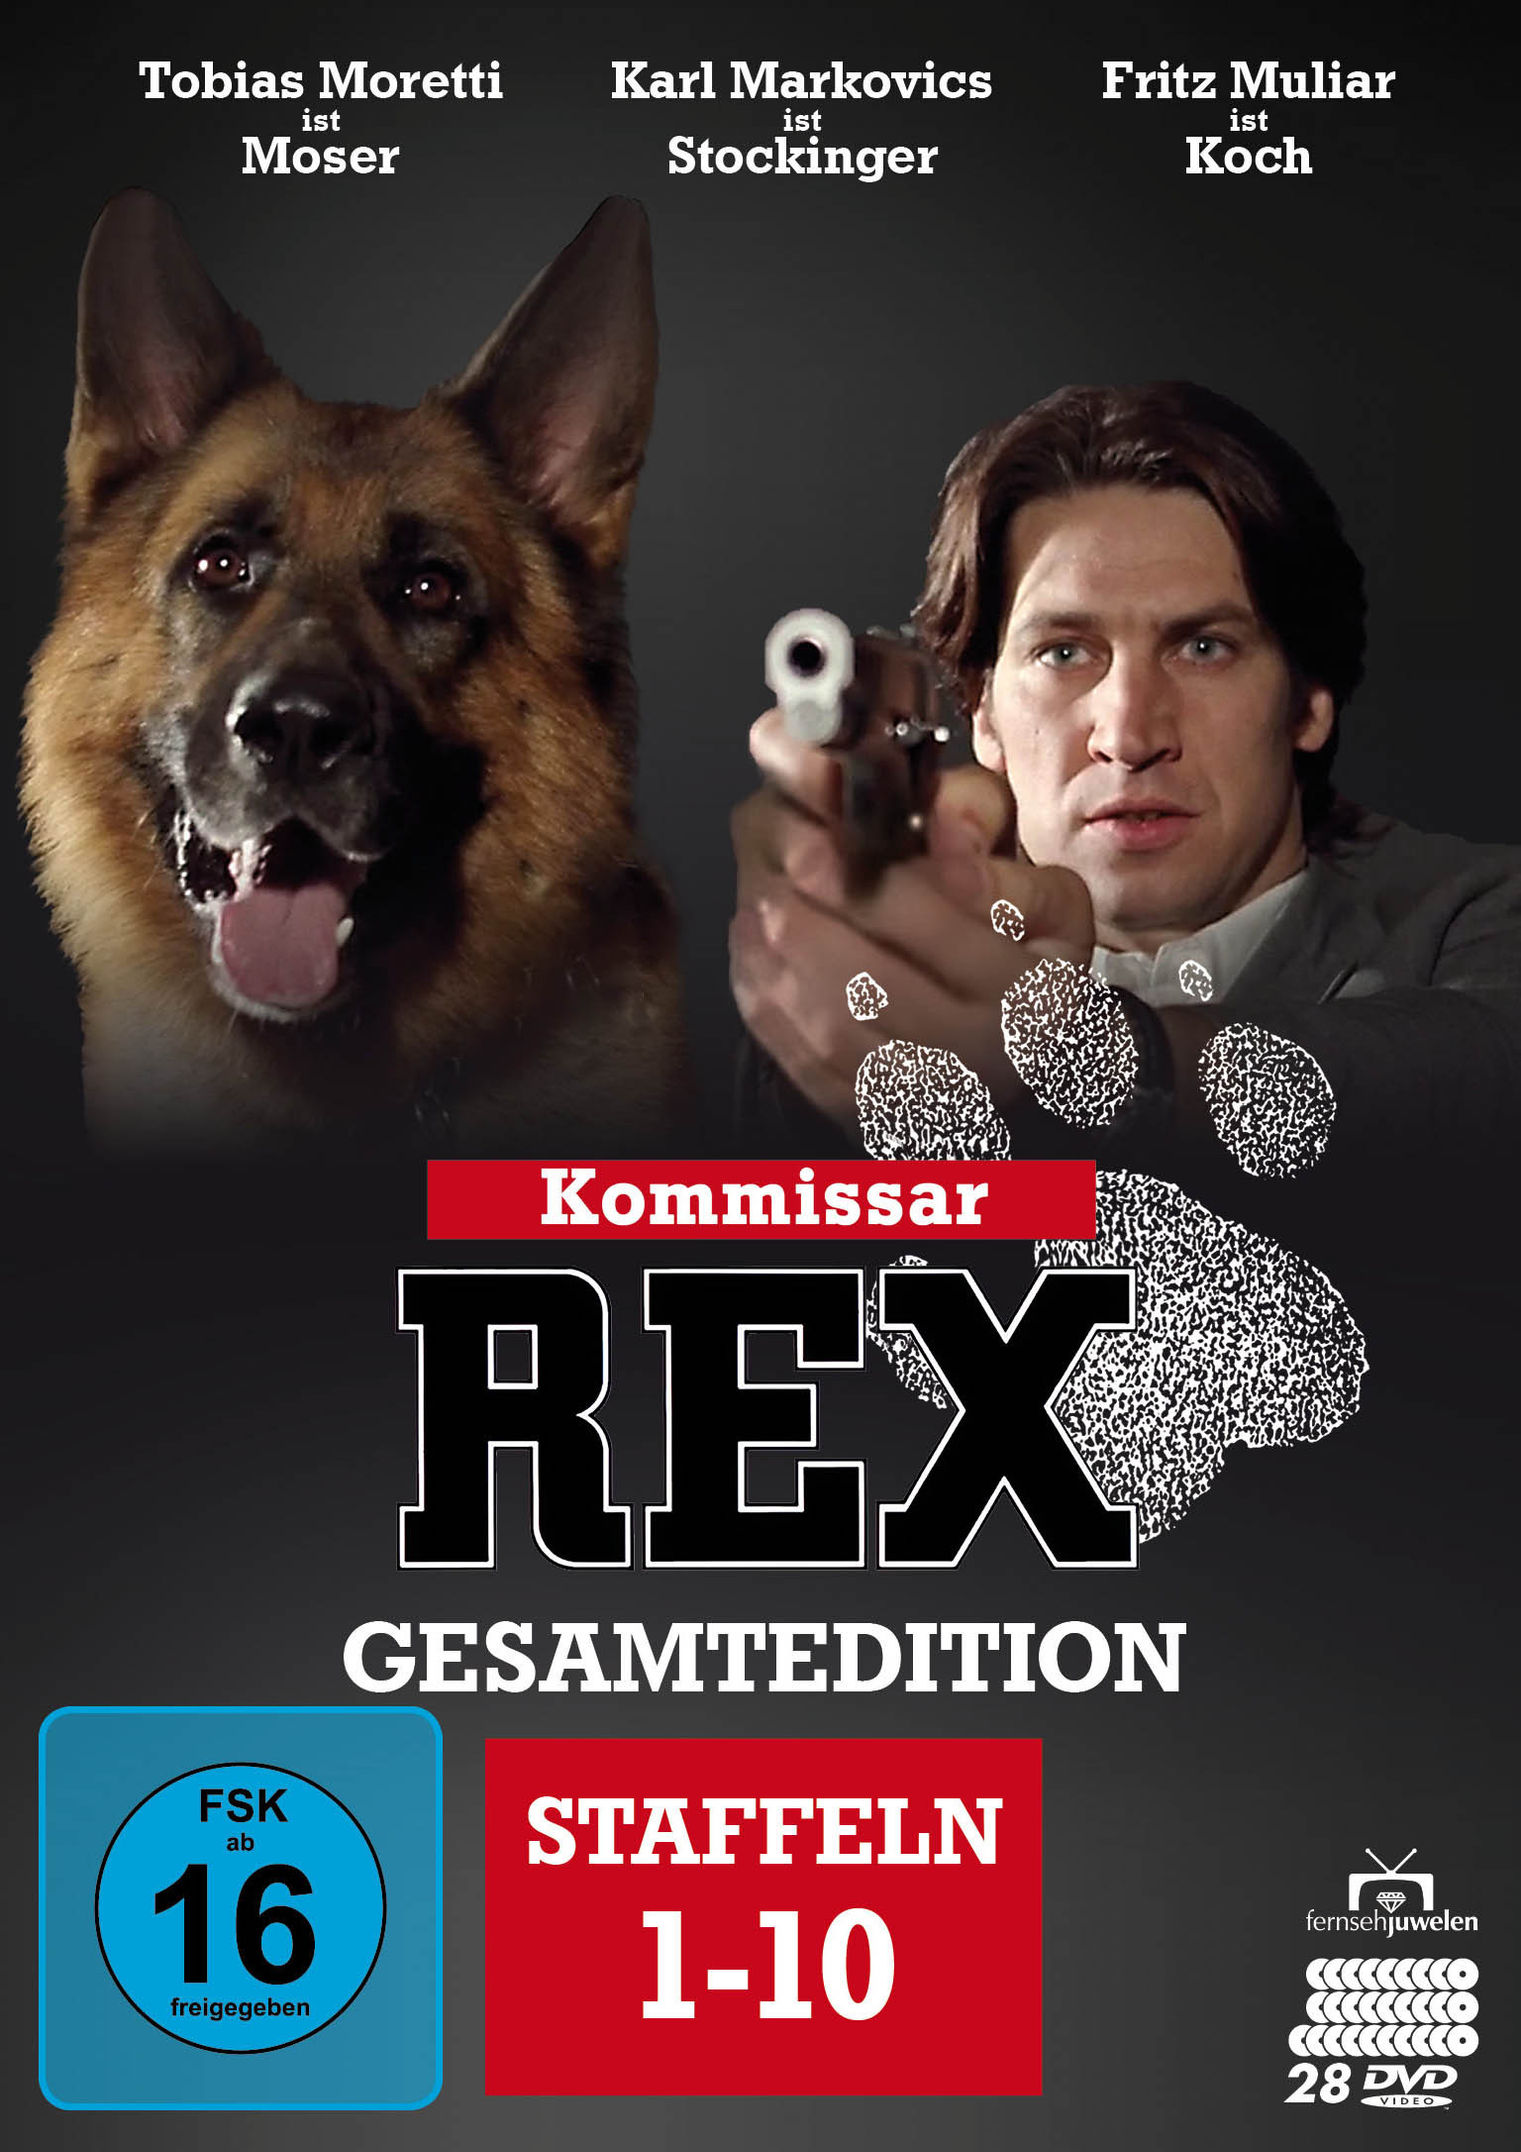 Kommissar Rex - Gesamtedition Staffeln 1 - 10 DVD | Weltbild.de